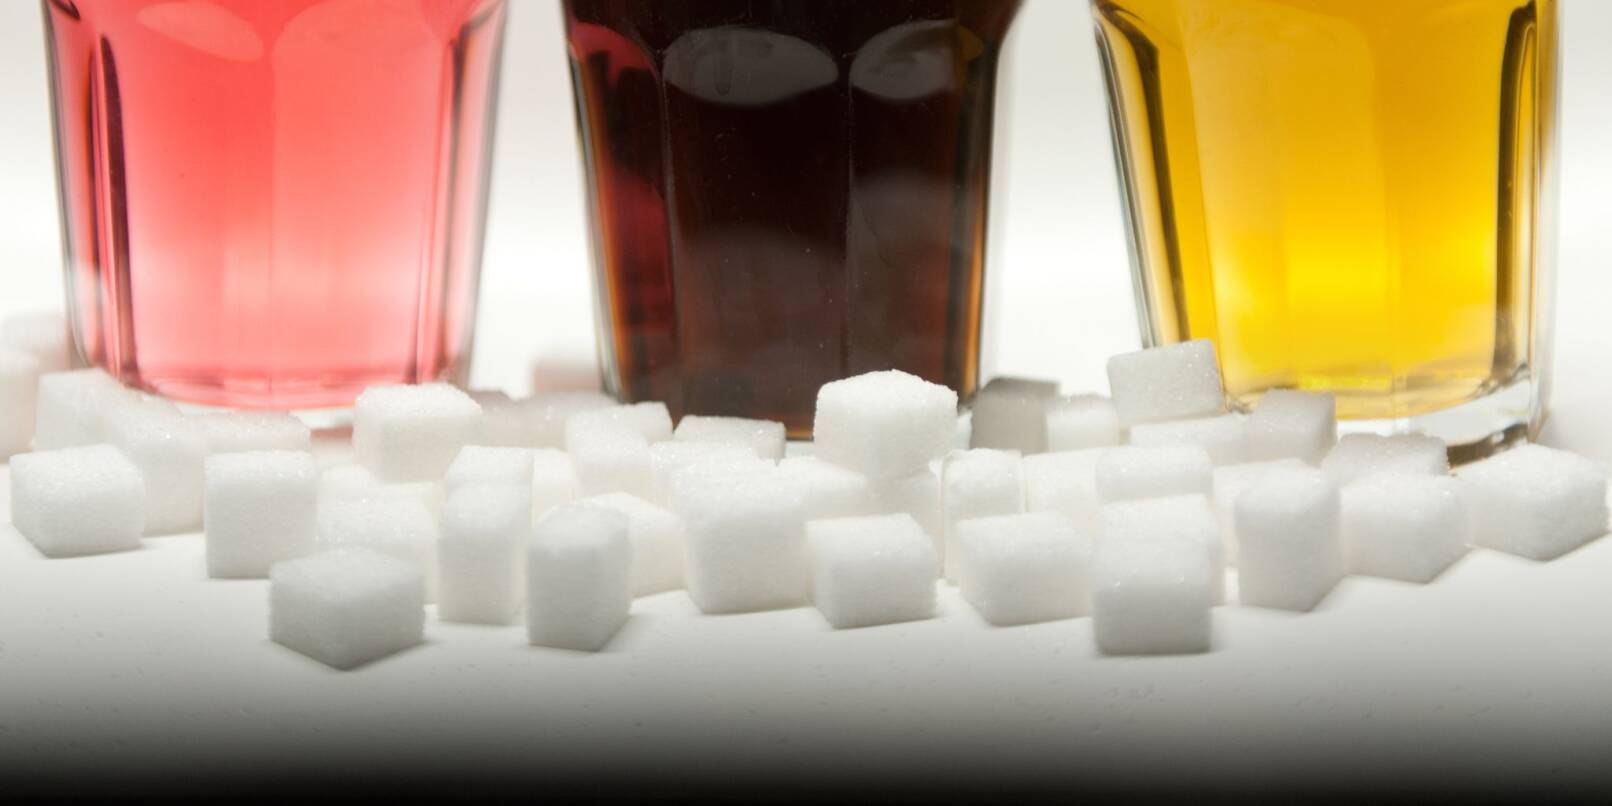 Bei gesüßten Erfrischungsgetränken hat sich laut einer Untersuchung ein zunächst deutlicher Rückgang der Zuckergehalte zuletzt nicht fortgesetzt.